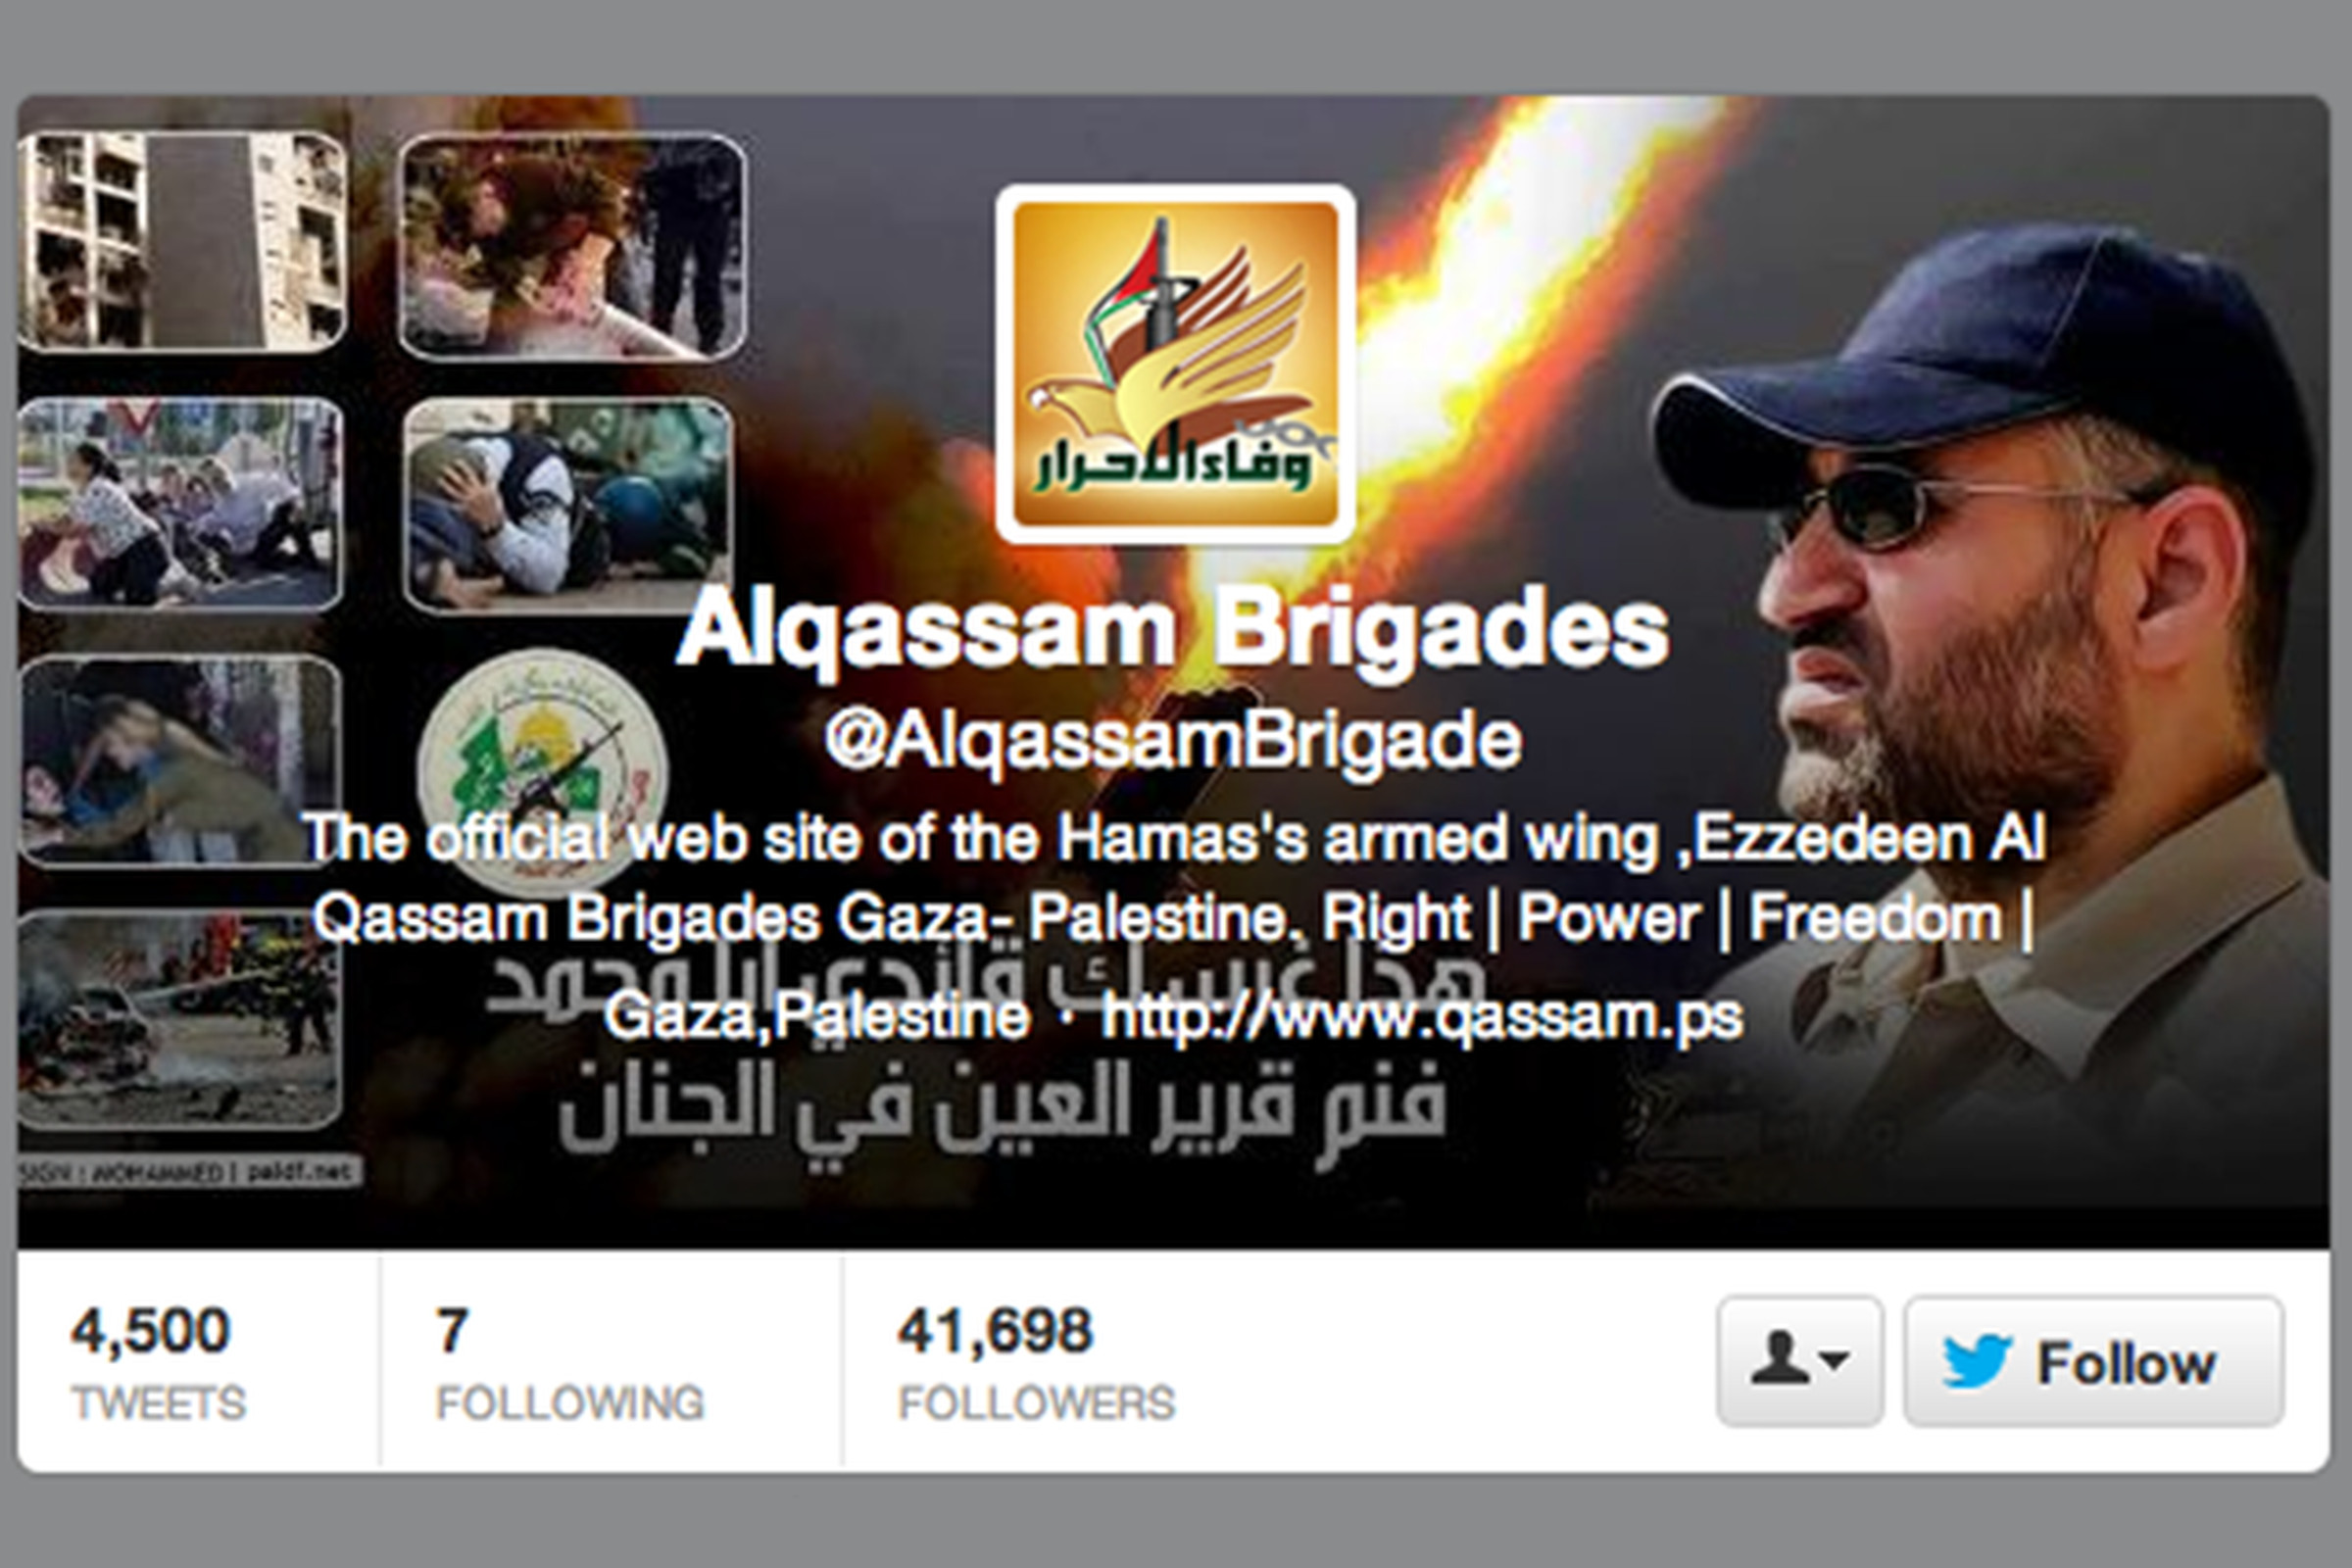 alqassam brigades twitter hamas